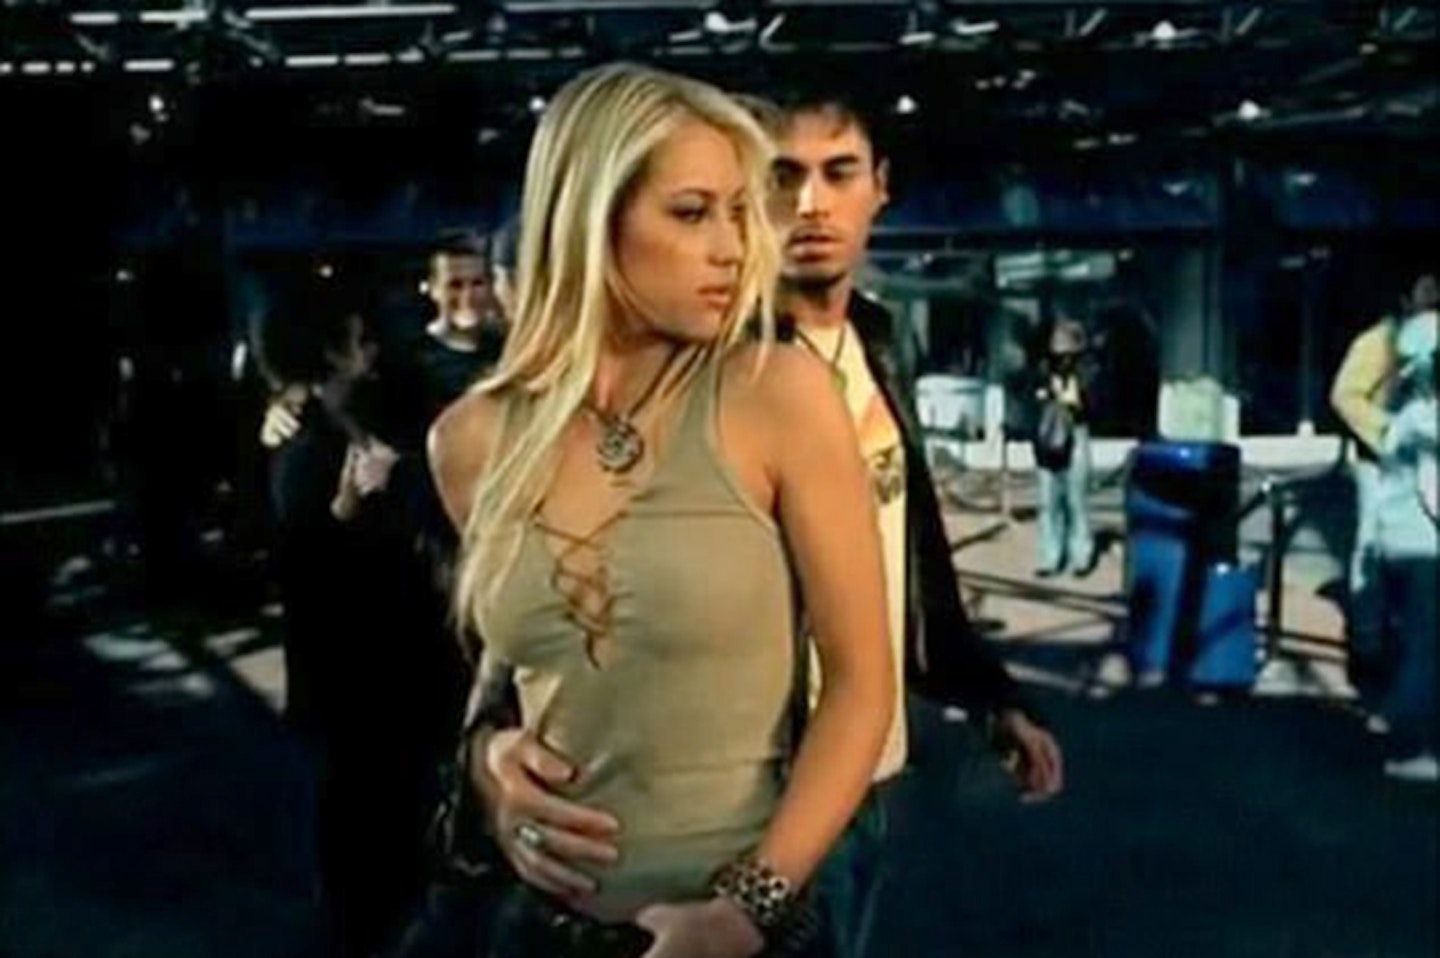 Anna starred in Enrique's video for Escape in 2001